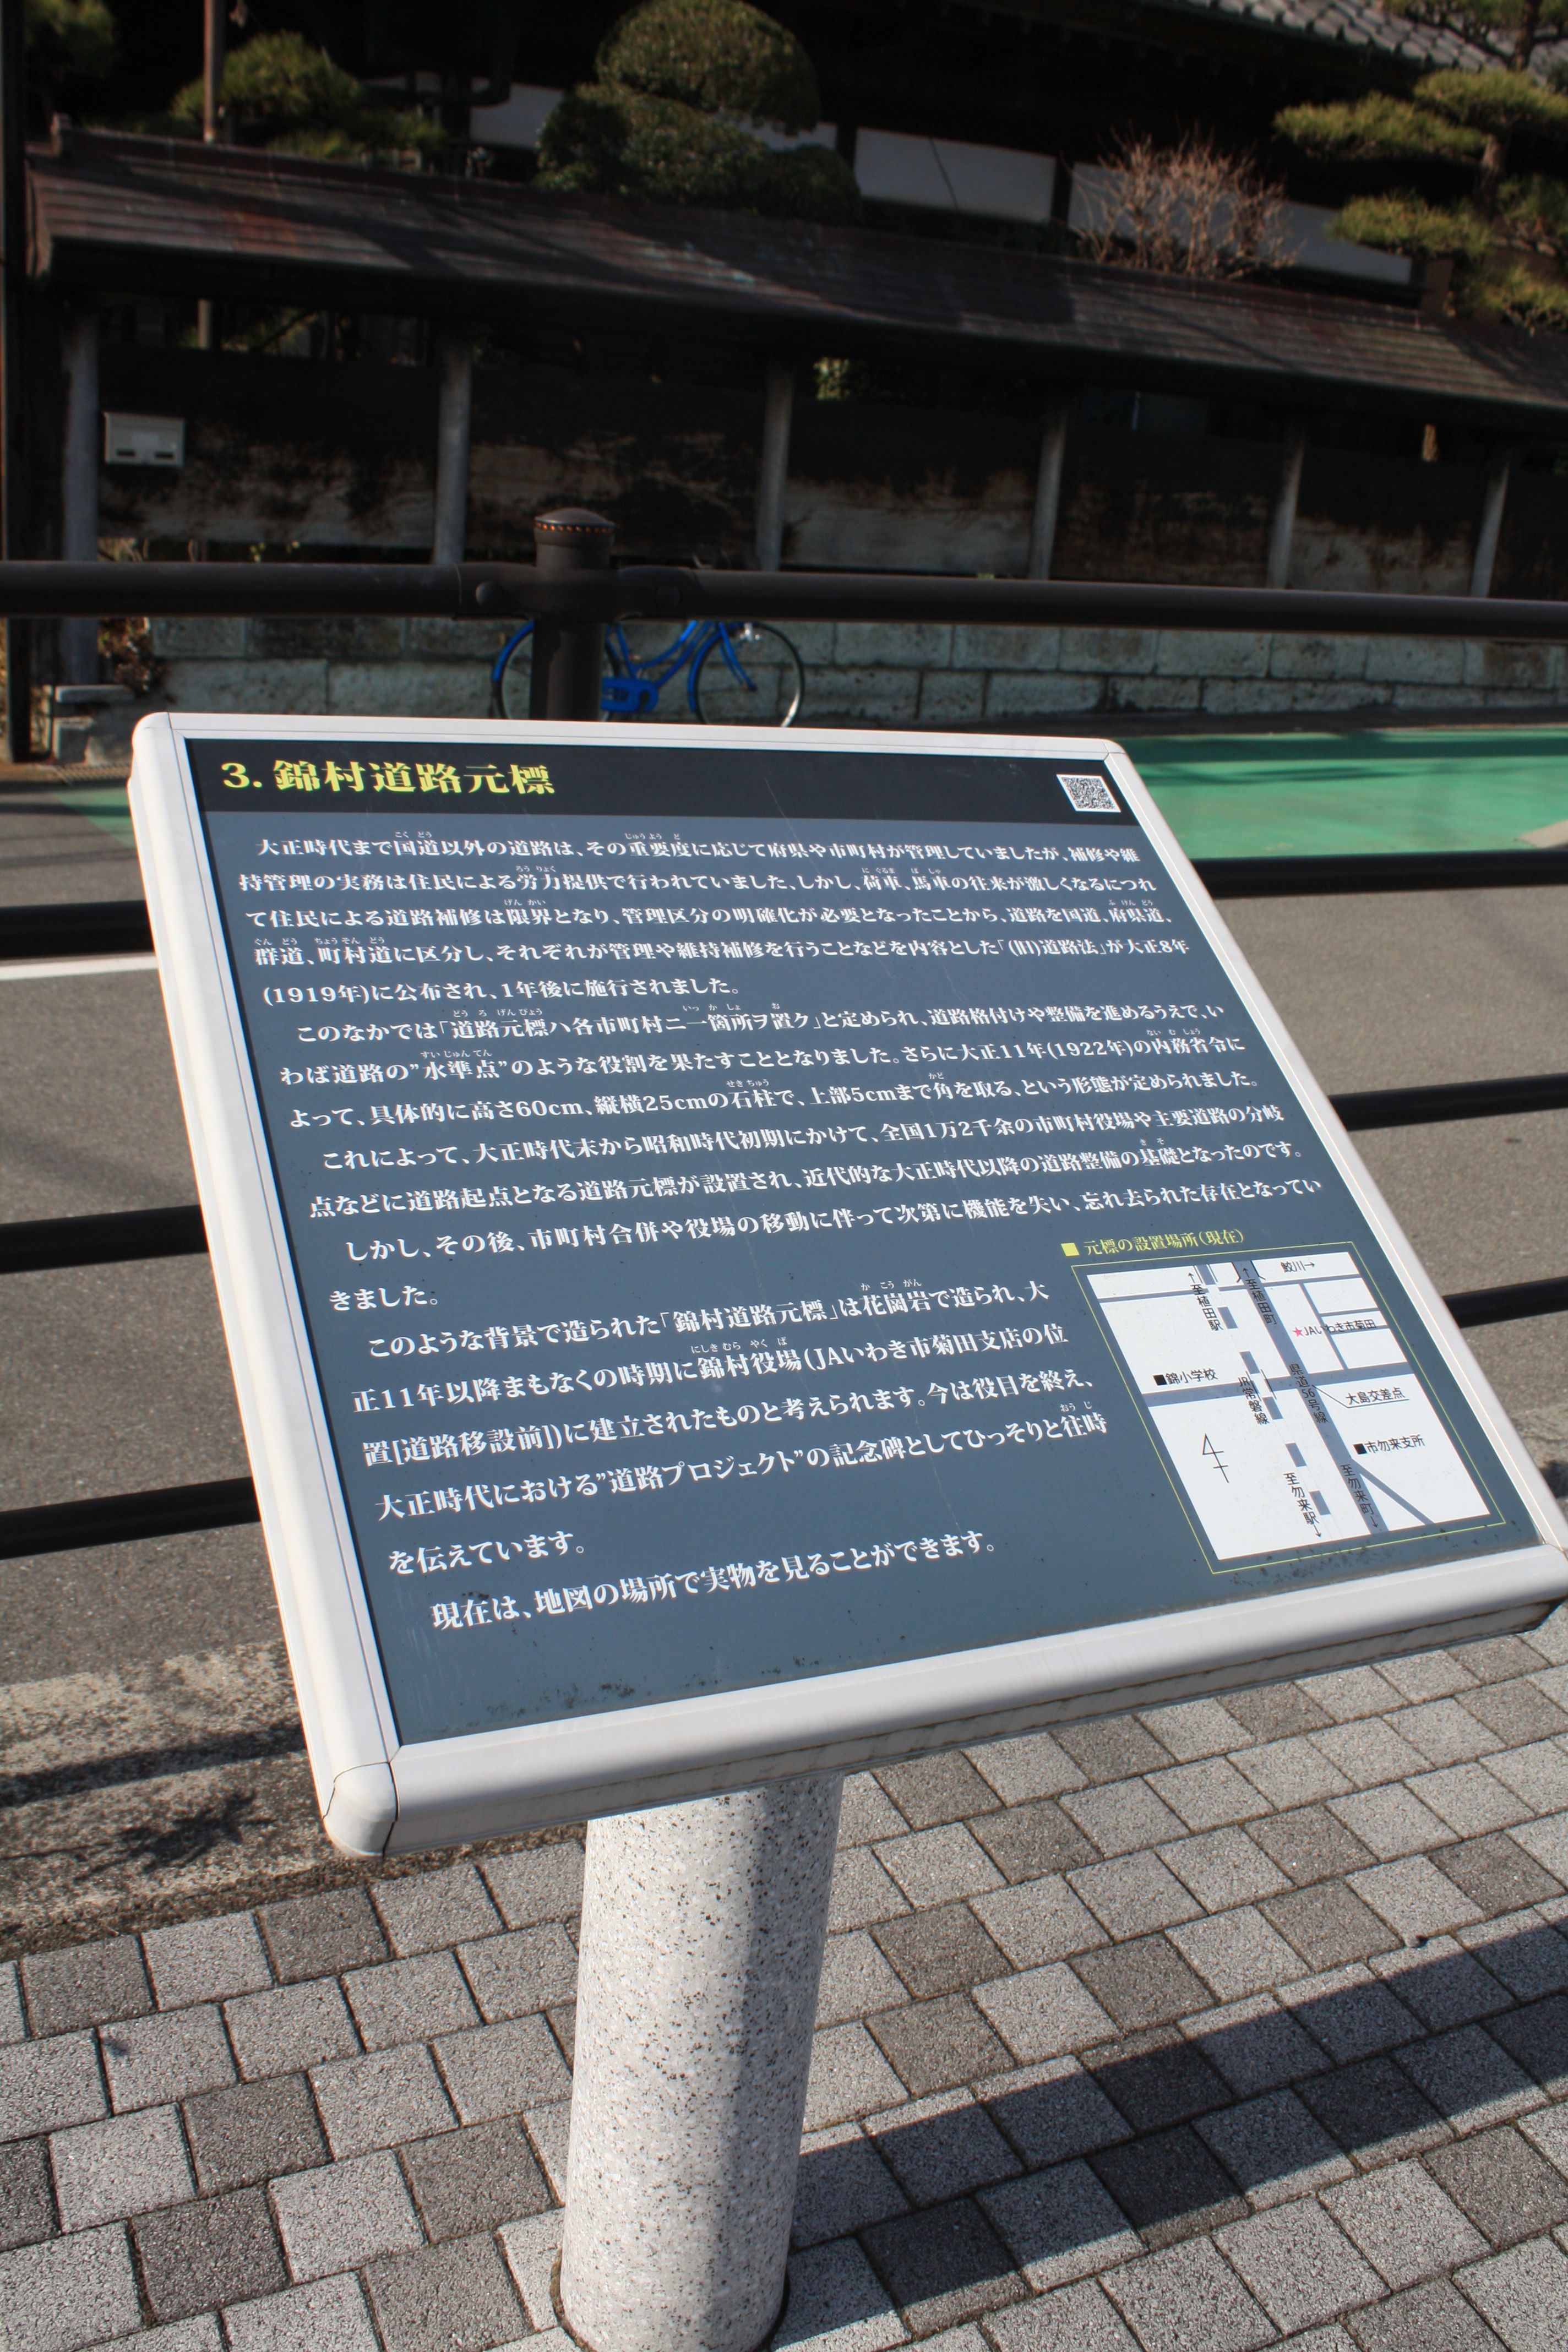 15 錦村道標の解説板(令和2年1月、おやけこういち氏撮影)